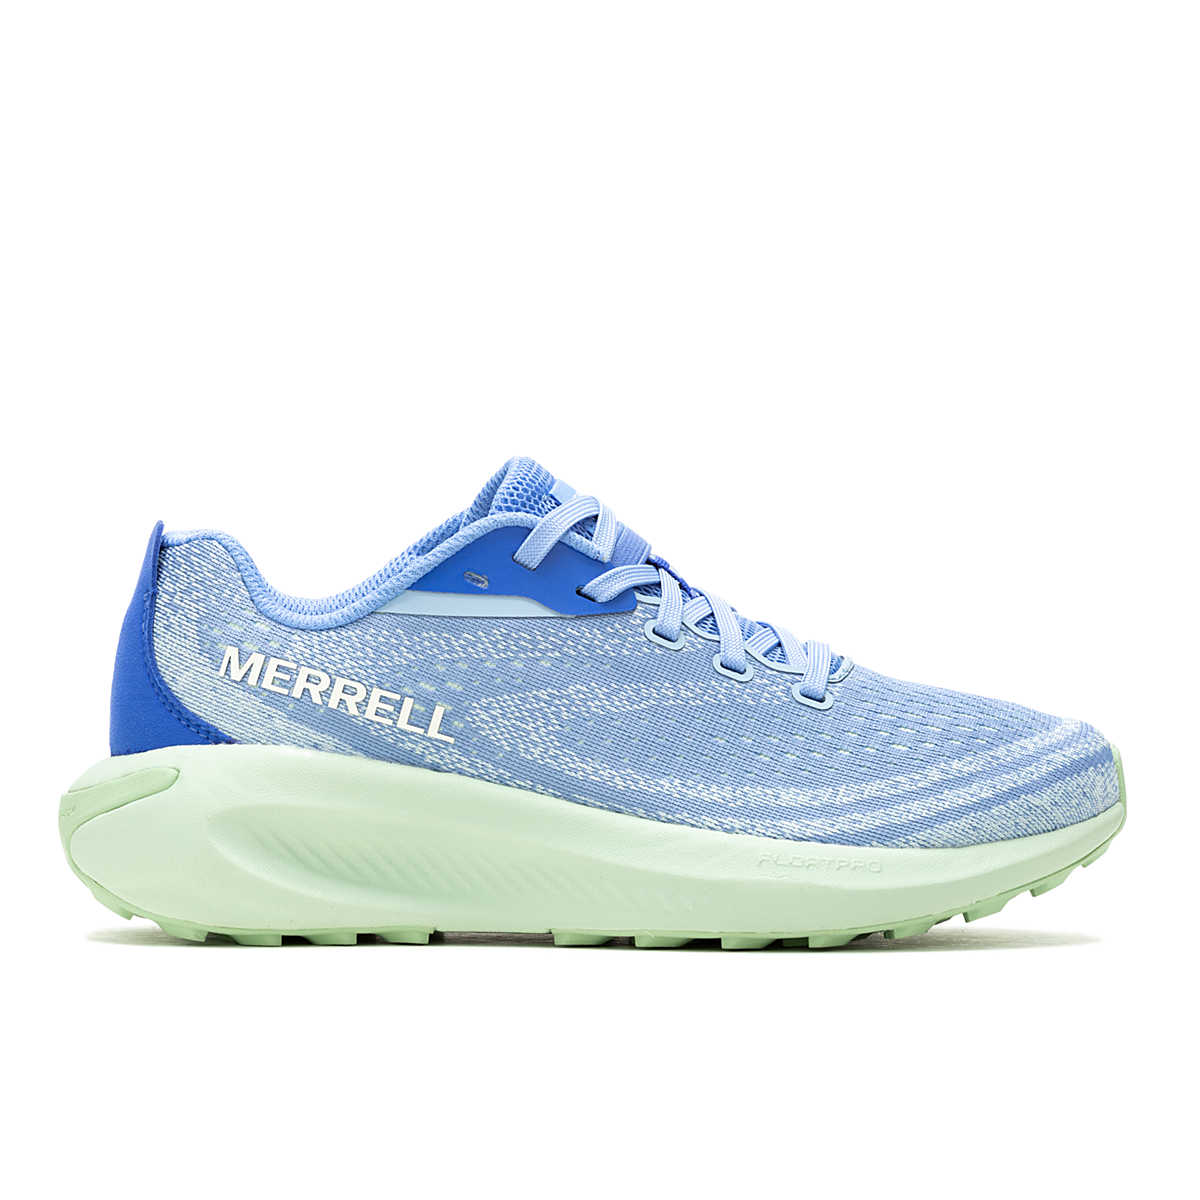 Women's Merrell Morphlite Running Sneakers - Cornflower/Pear